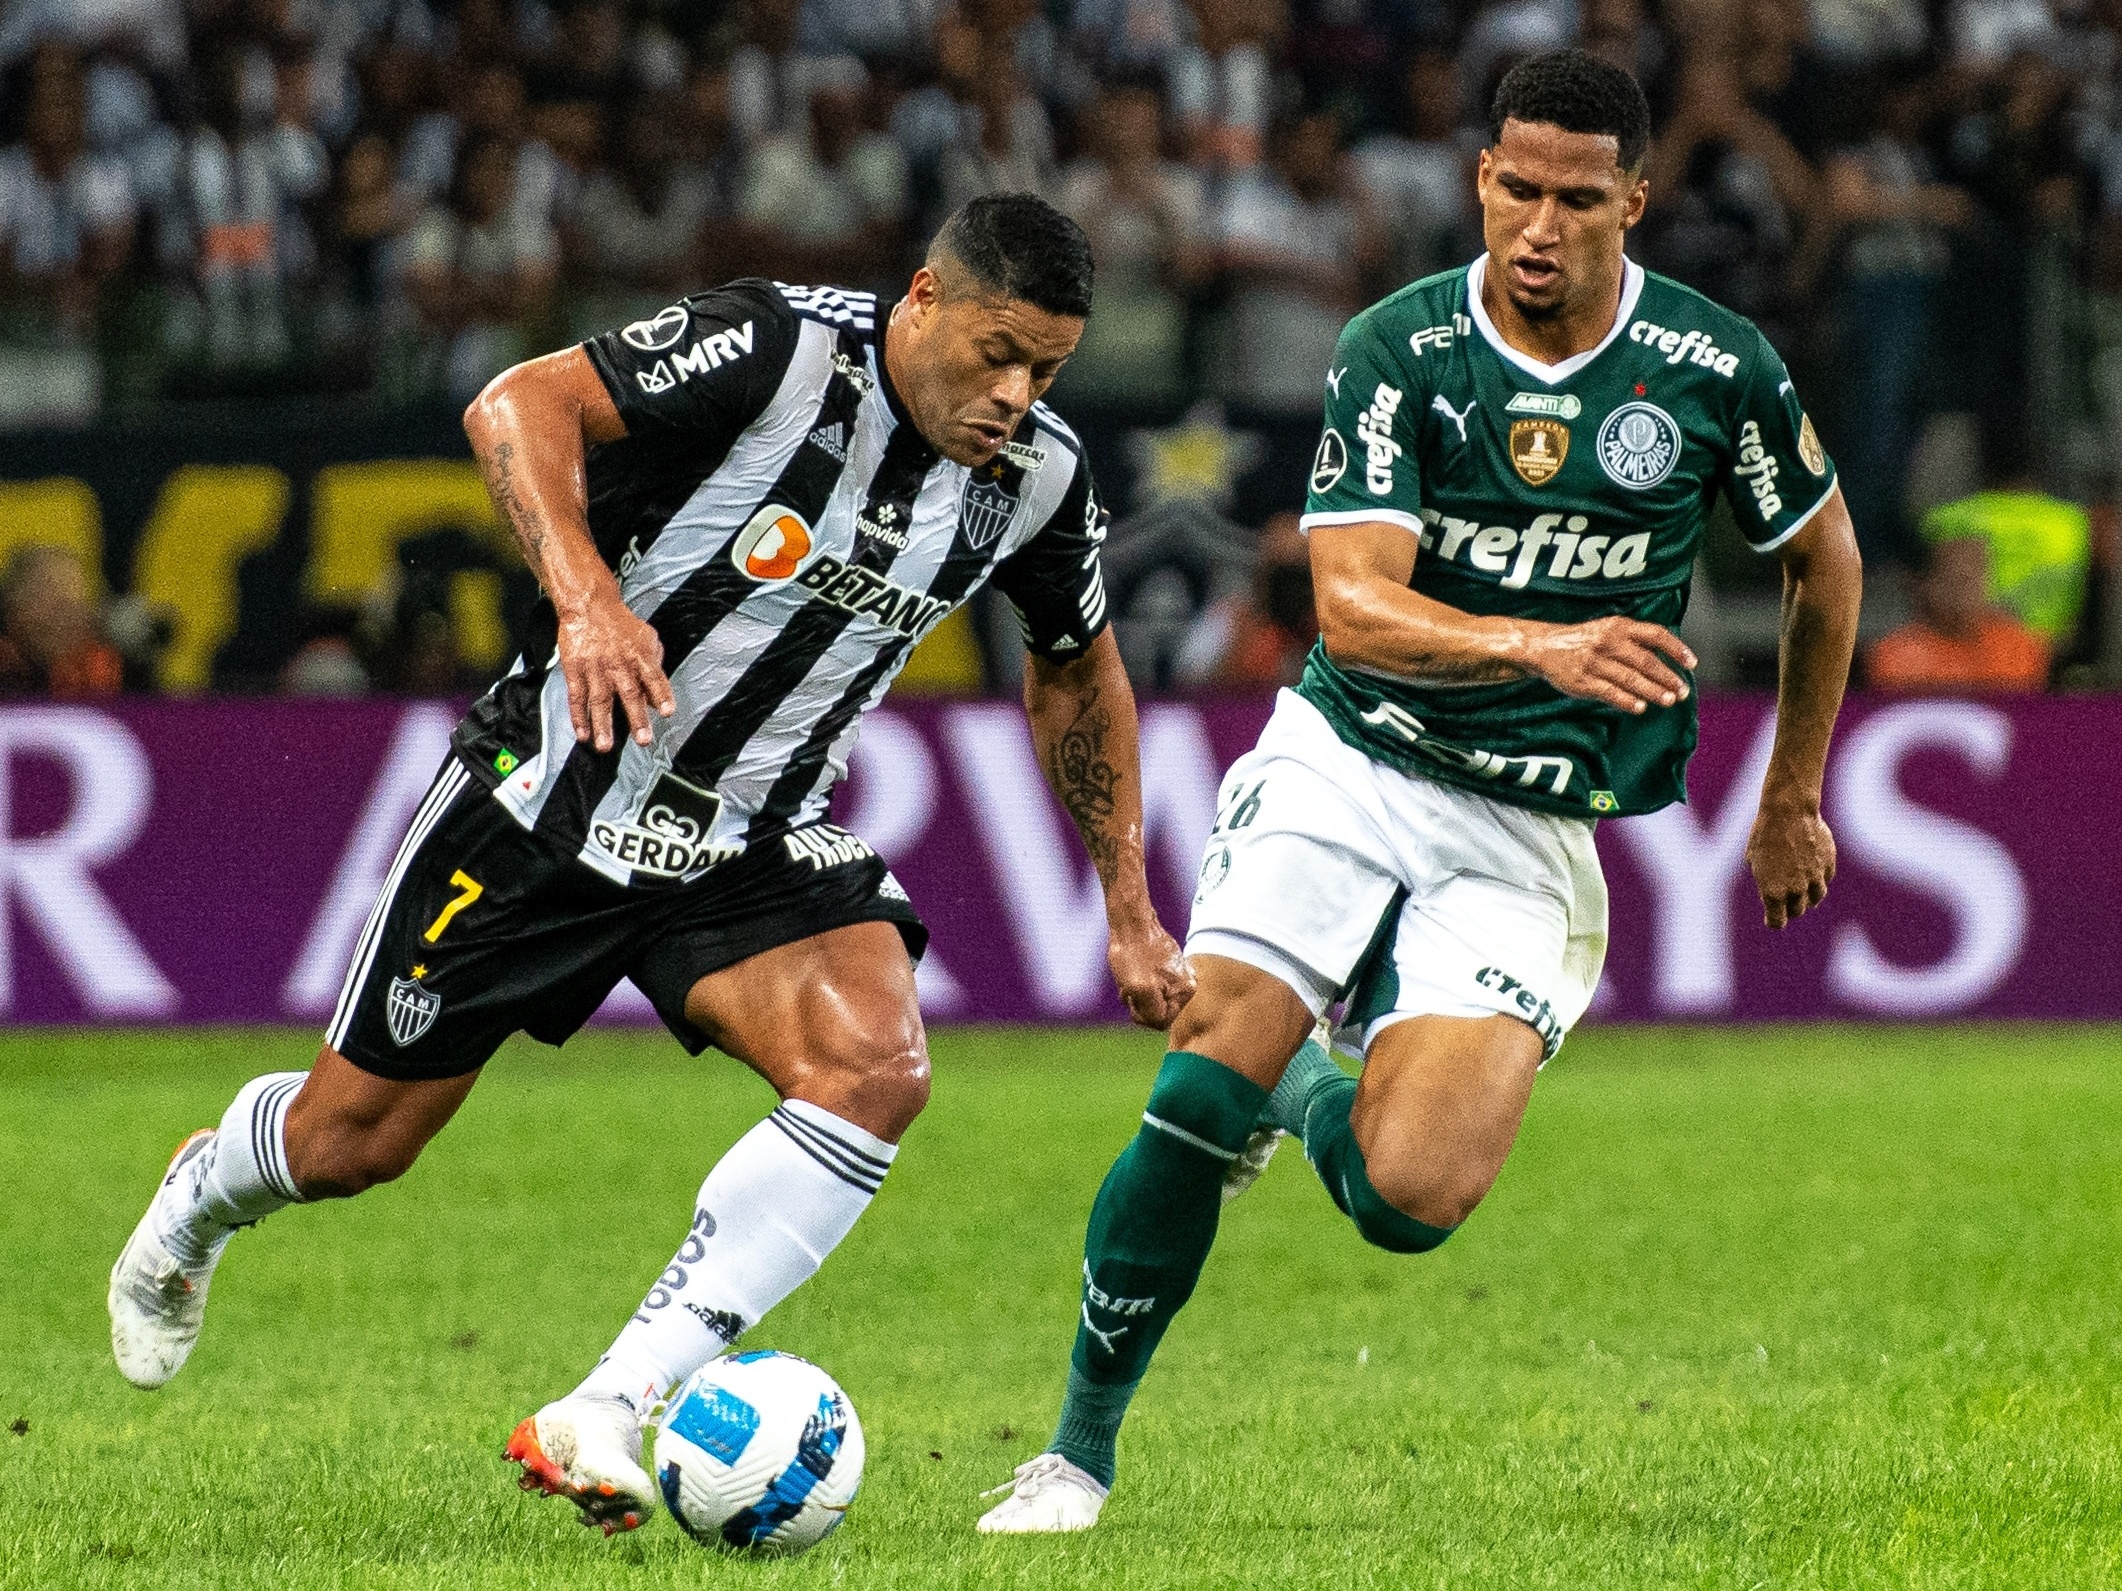 Palmeiras x Atlético-MG: informações, estatísticas e curiosidades –  Palmeiras